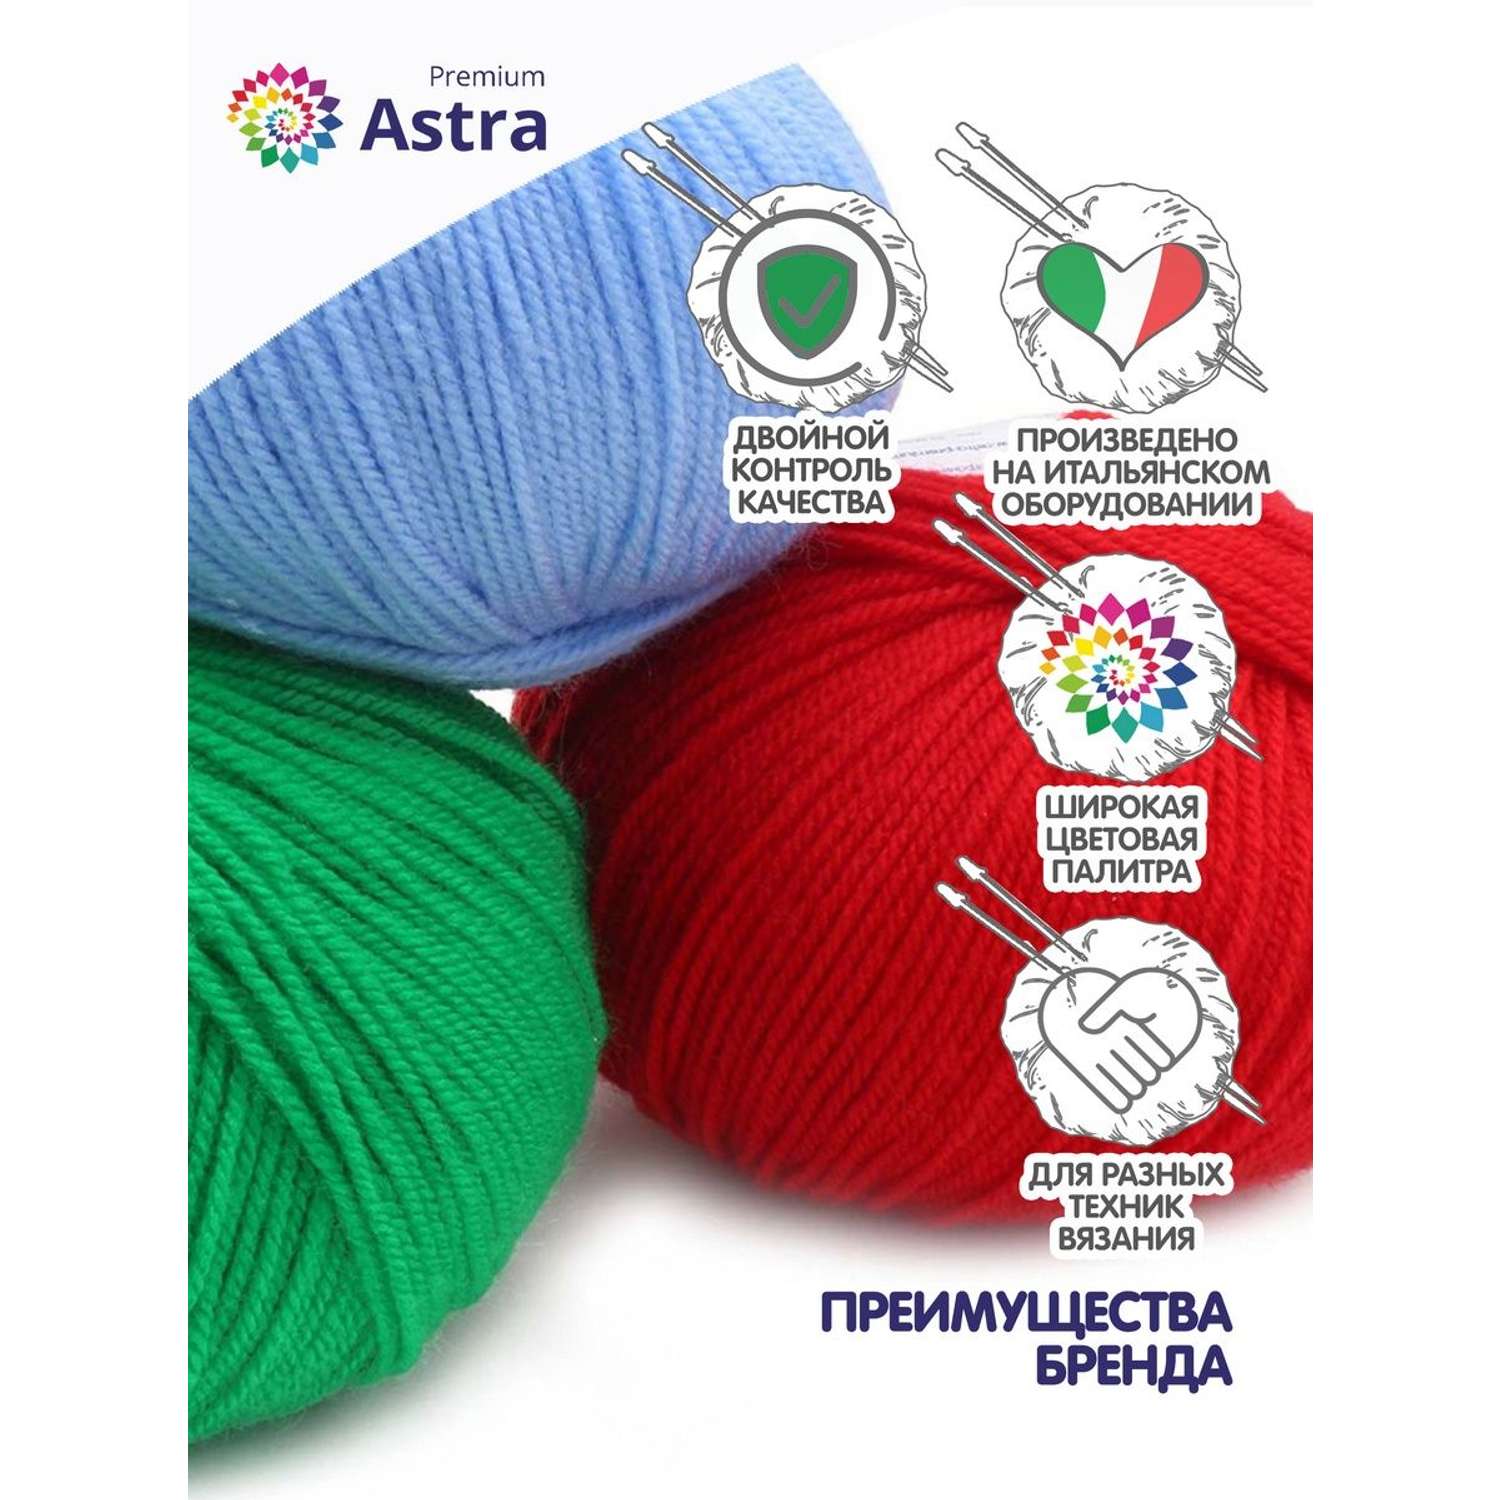 Пряжа для вязания Astra Premium амигуруми акрил для мягких игрушек 50 гр 175 м 180 светлая сирень 6 мотков - фото 3